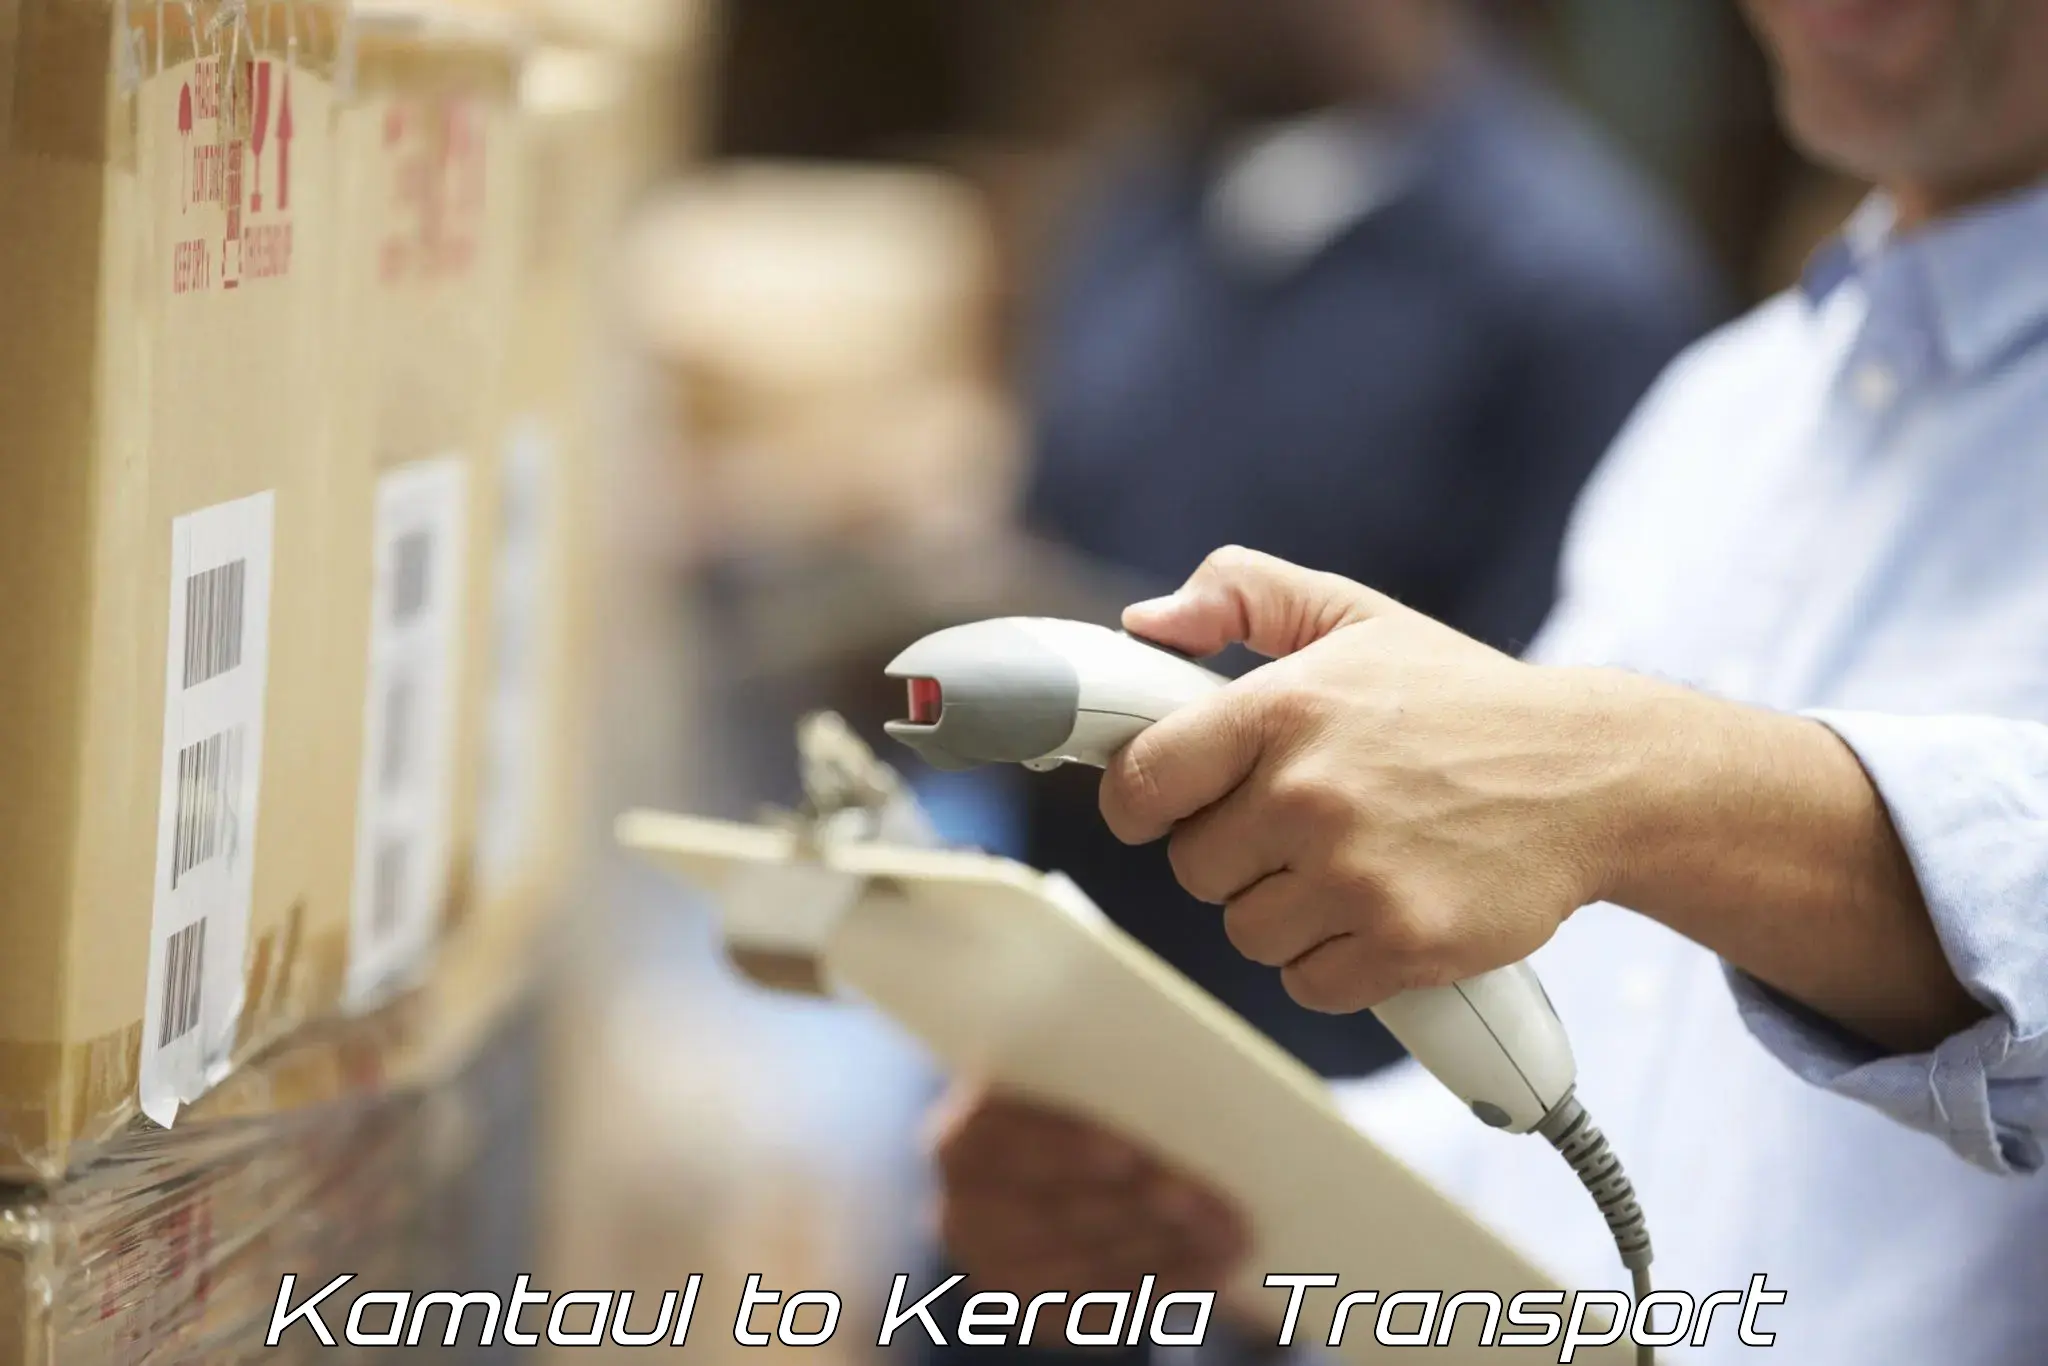 Goods transport services Kamtaul to Kuttiady